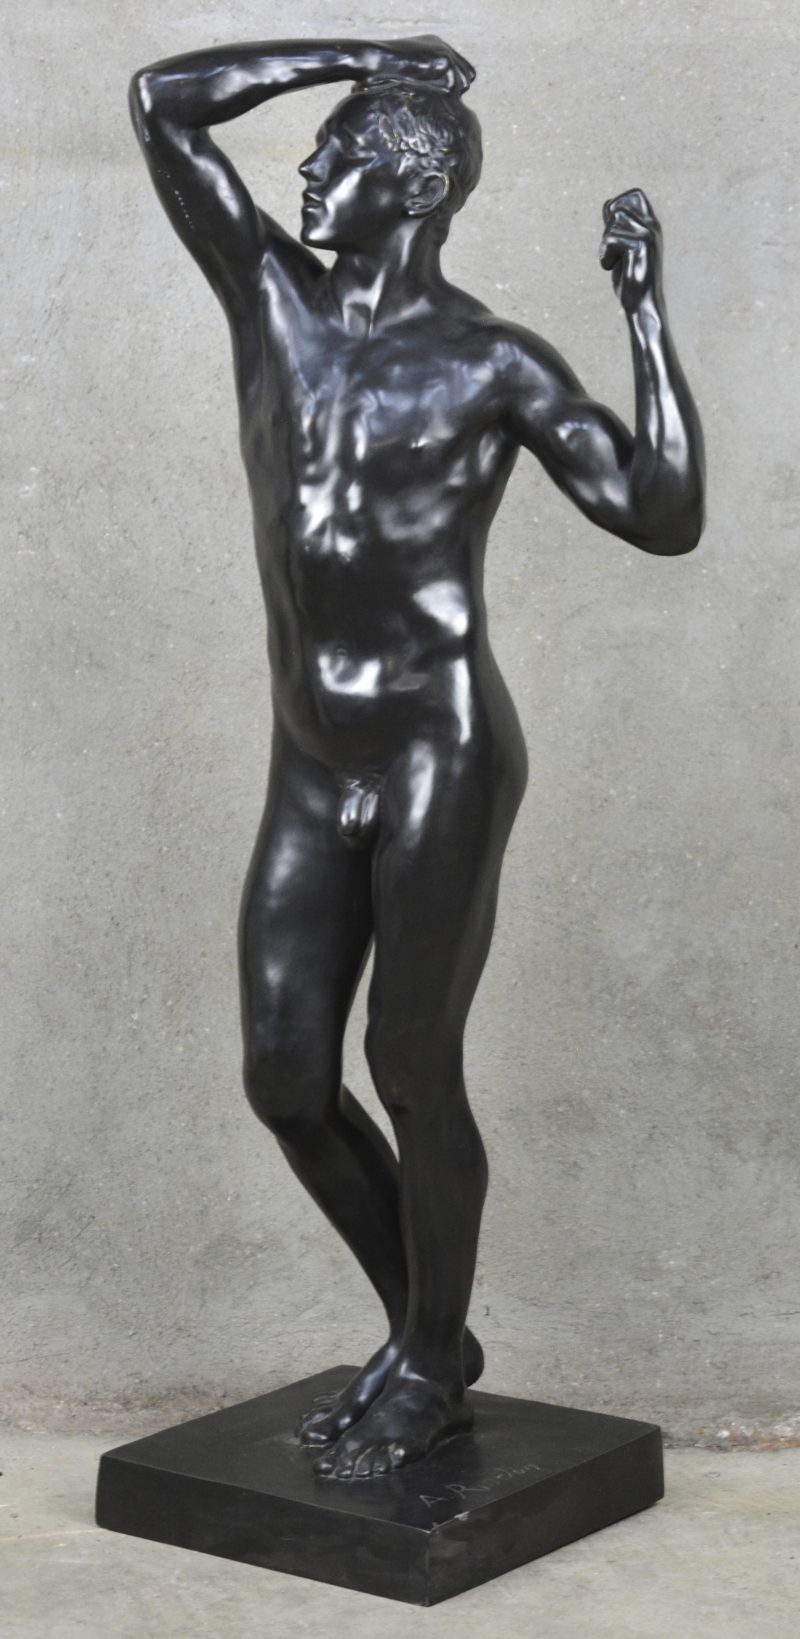 “De bronstijd”. Een zwartgepatineerd bronzen beeld naar het werk van Rodin.